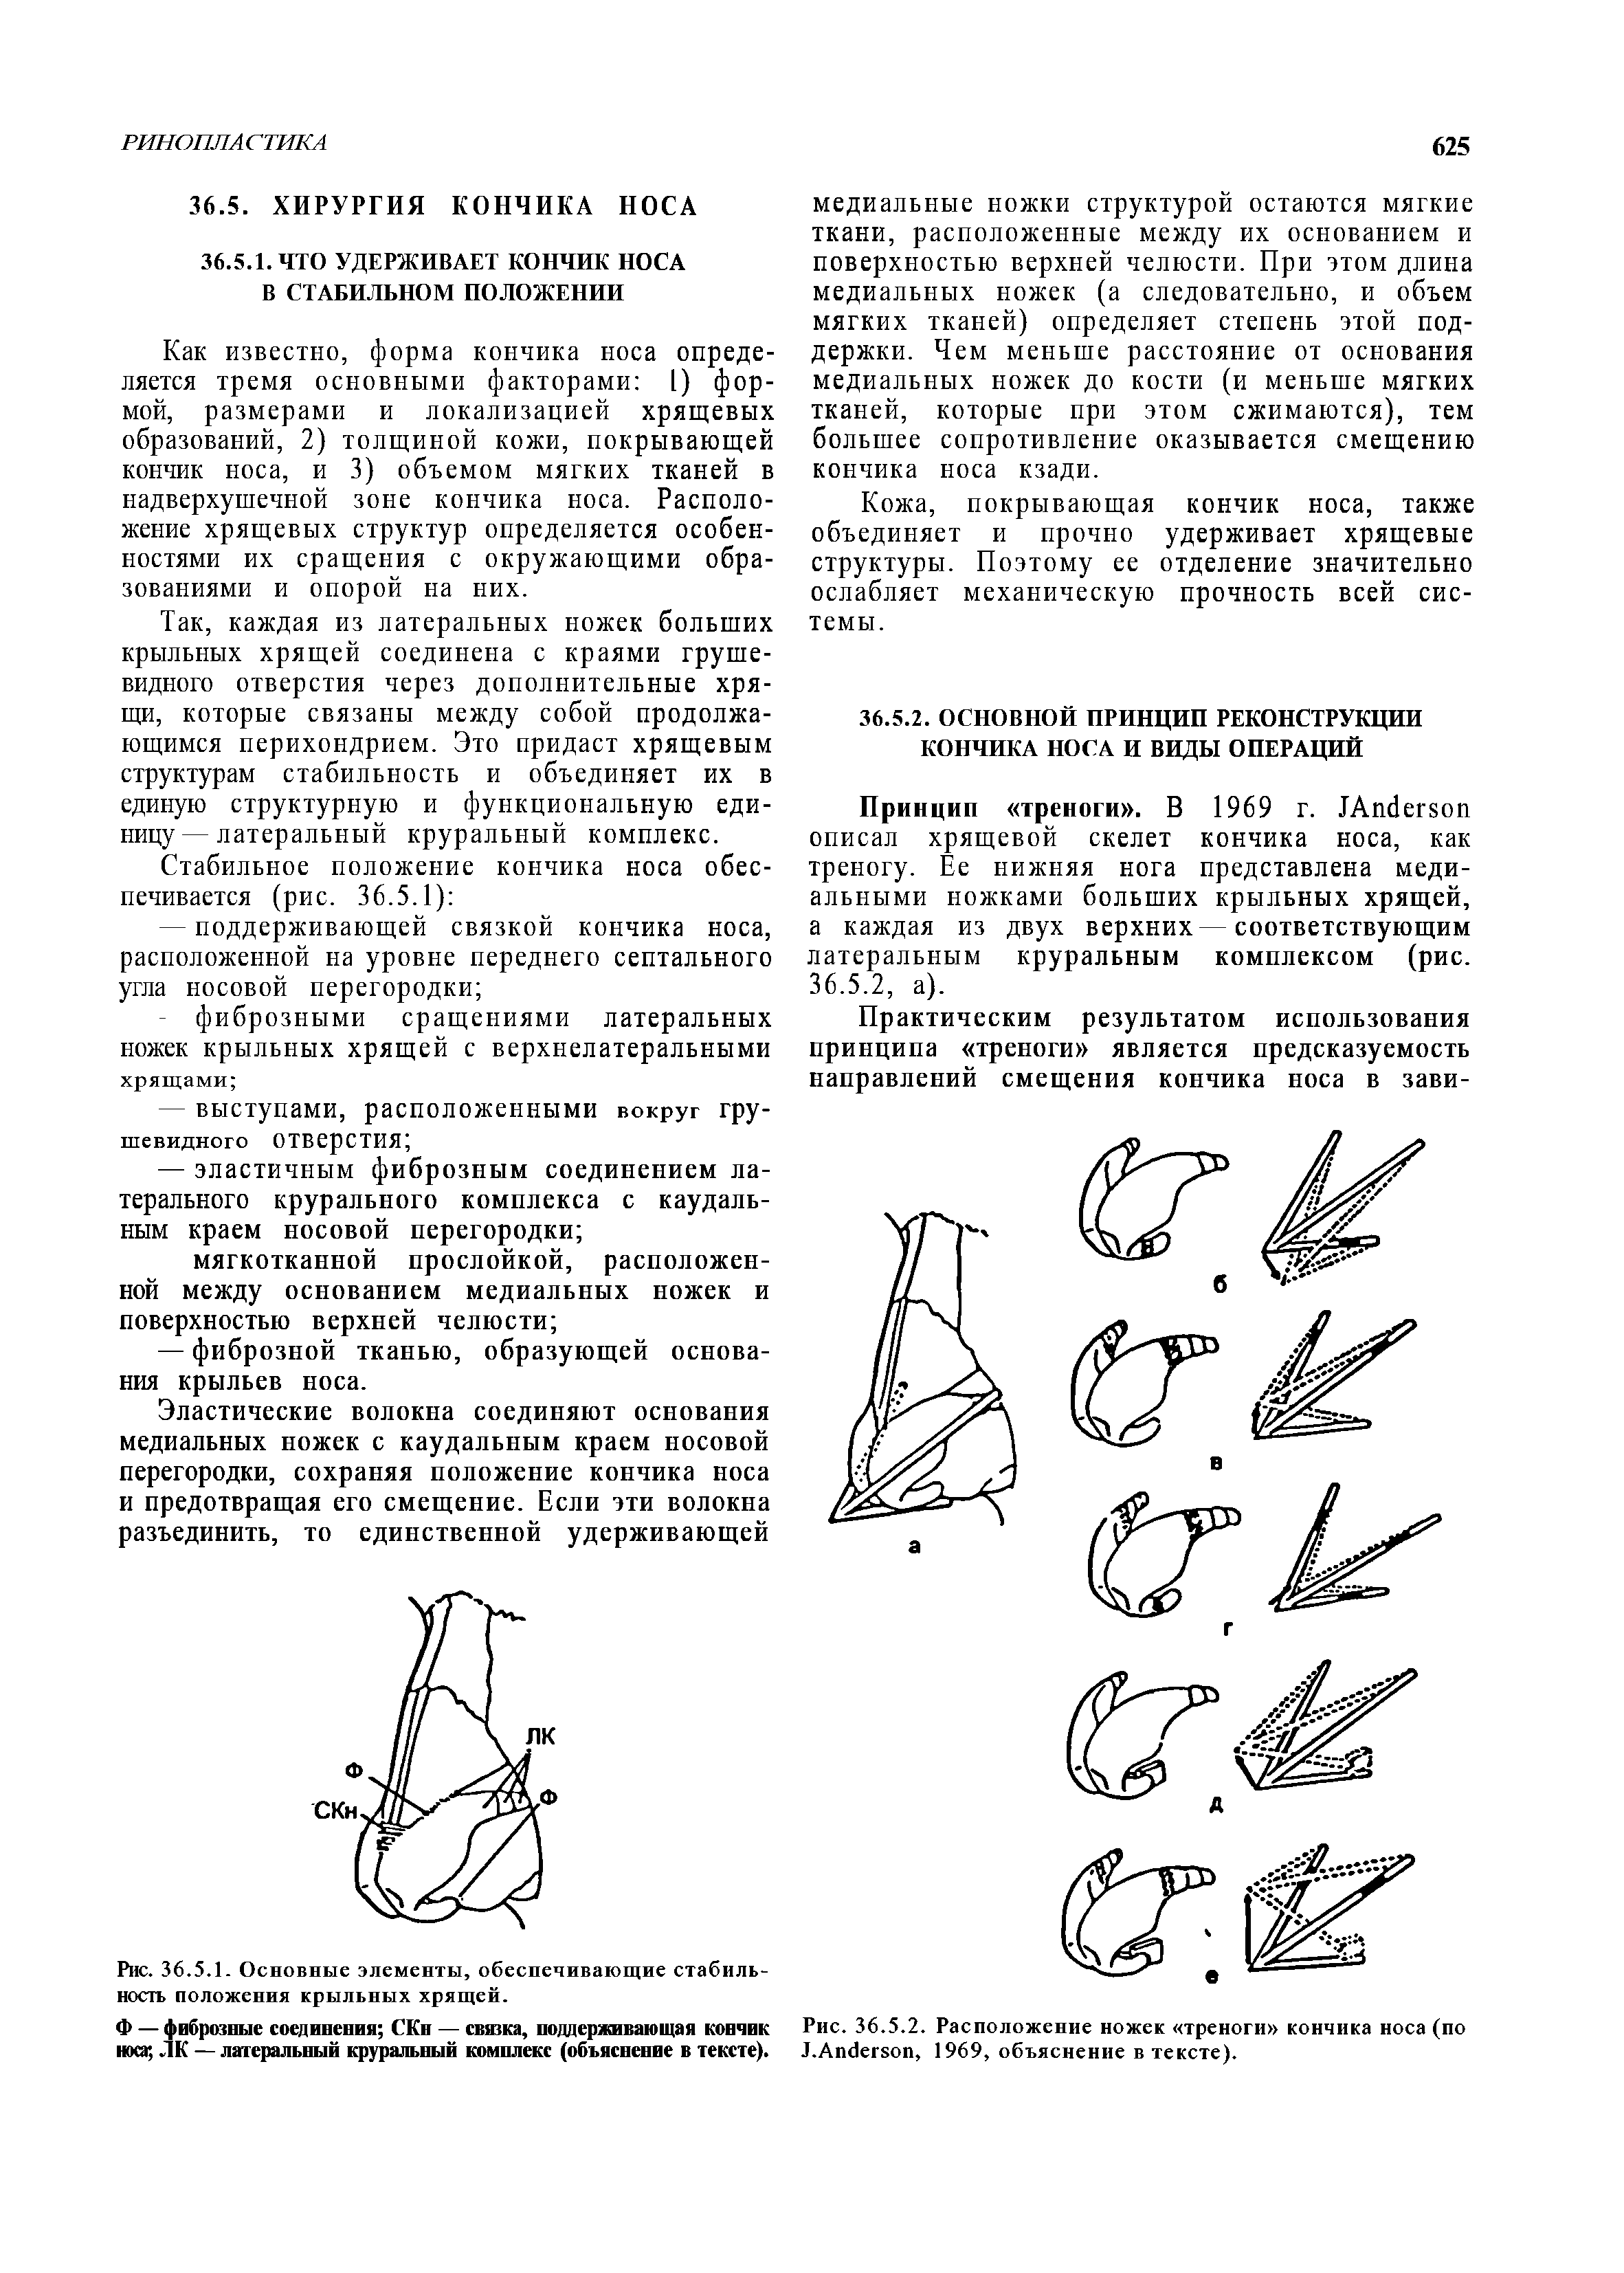 Рис. 36.5.2. Расположение ножек треноги кончика носа (по J.A , 1969, объяснение в тексте).